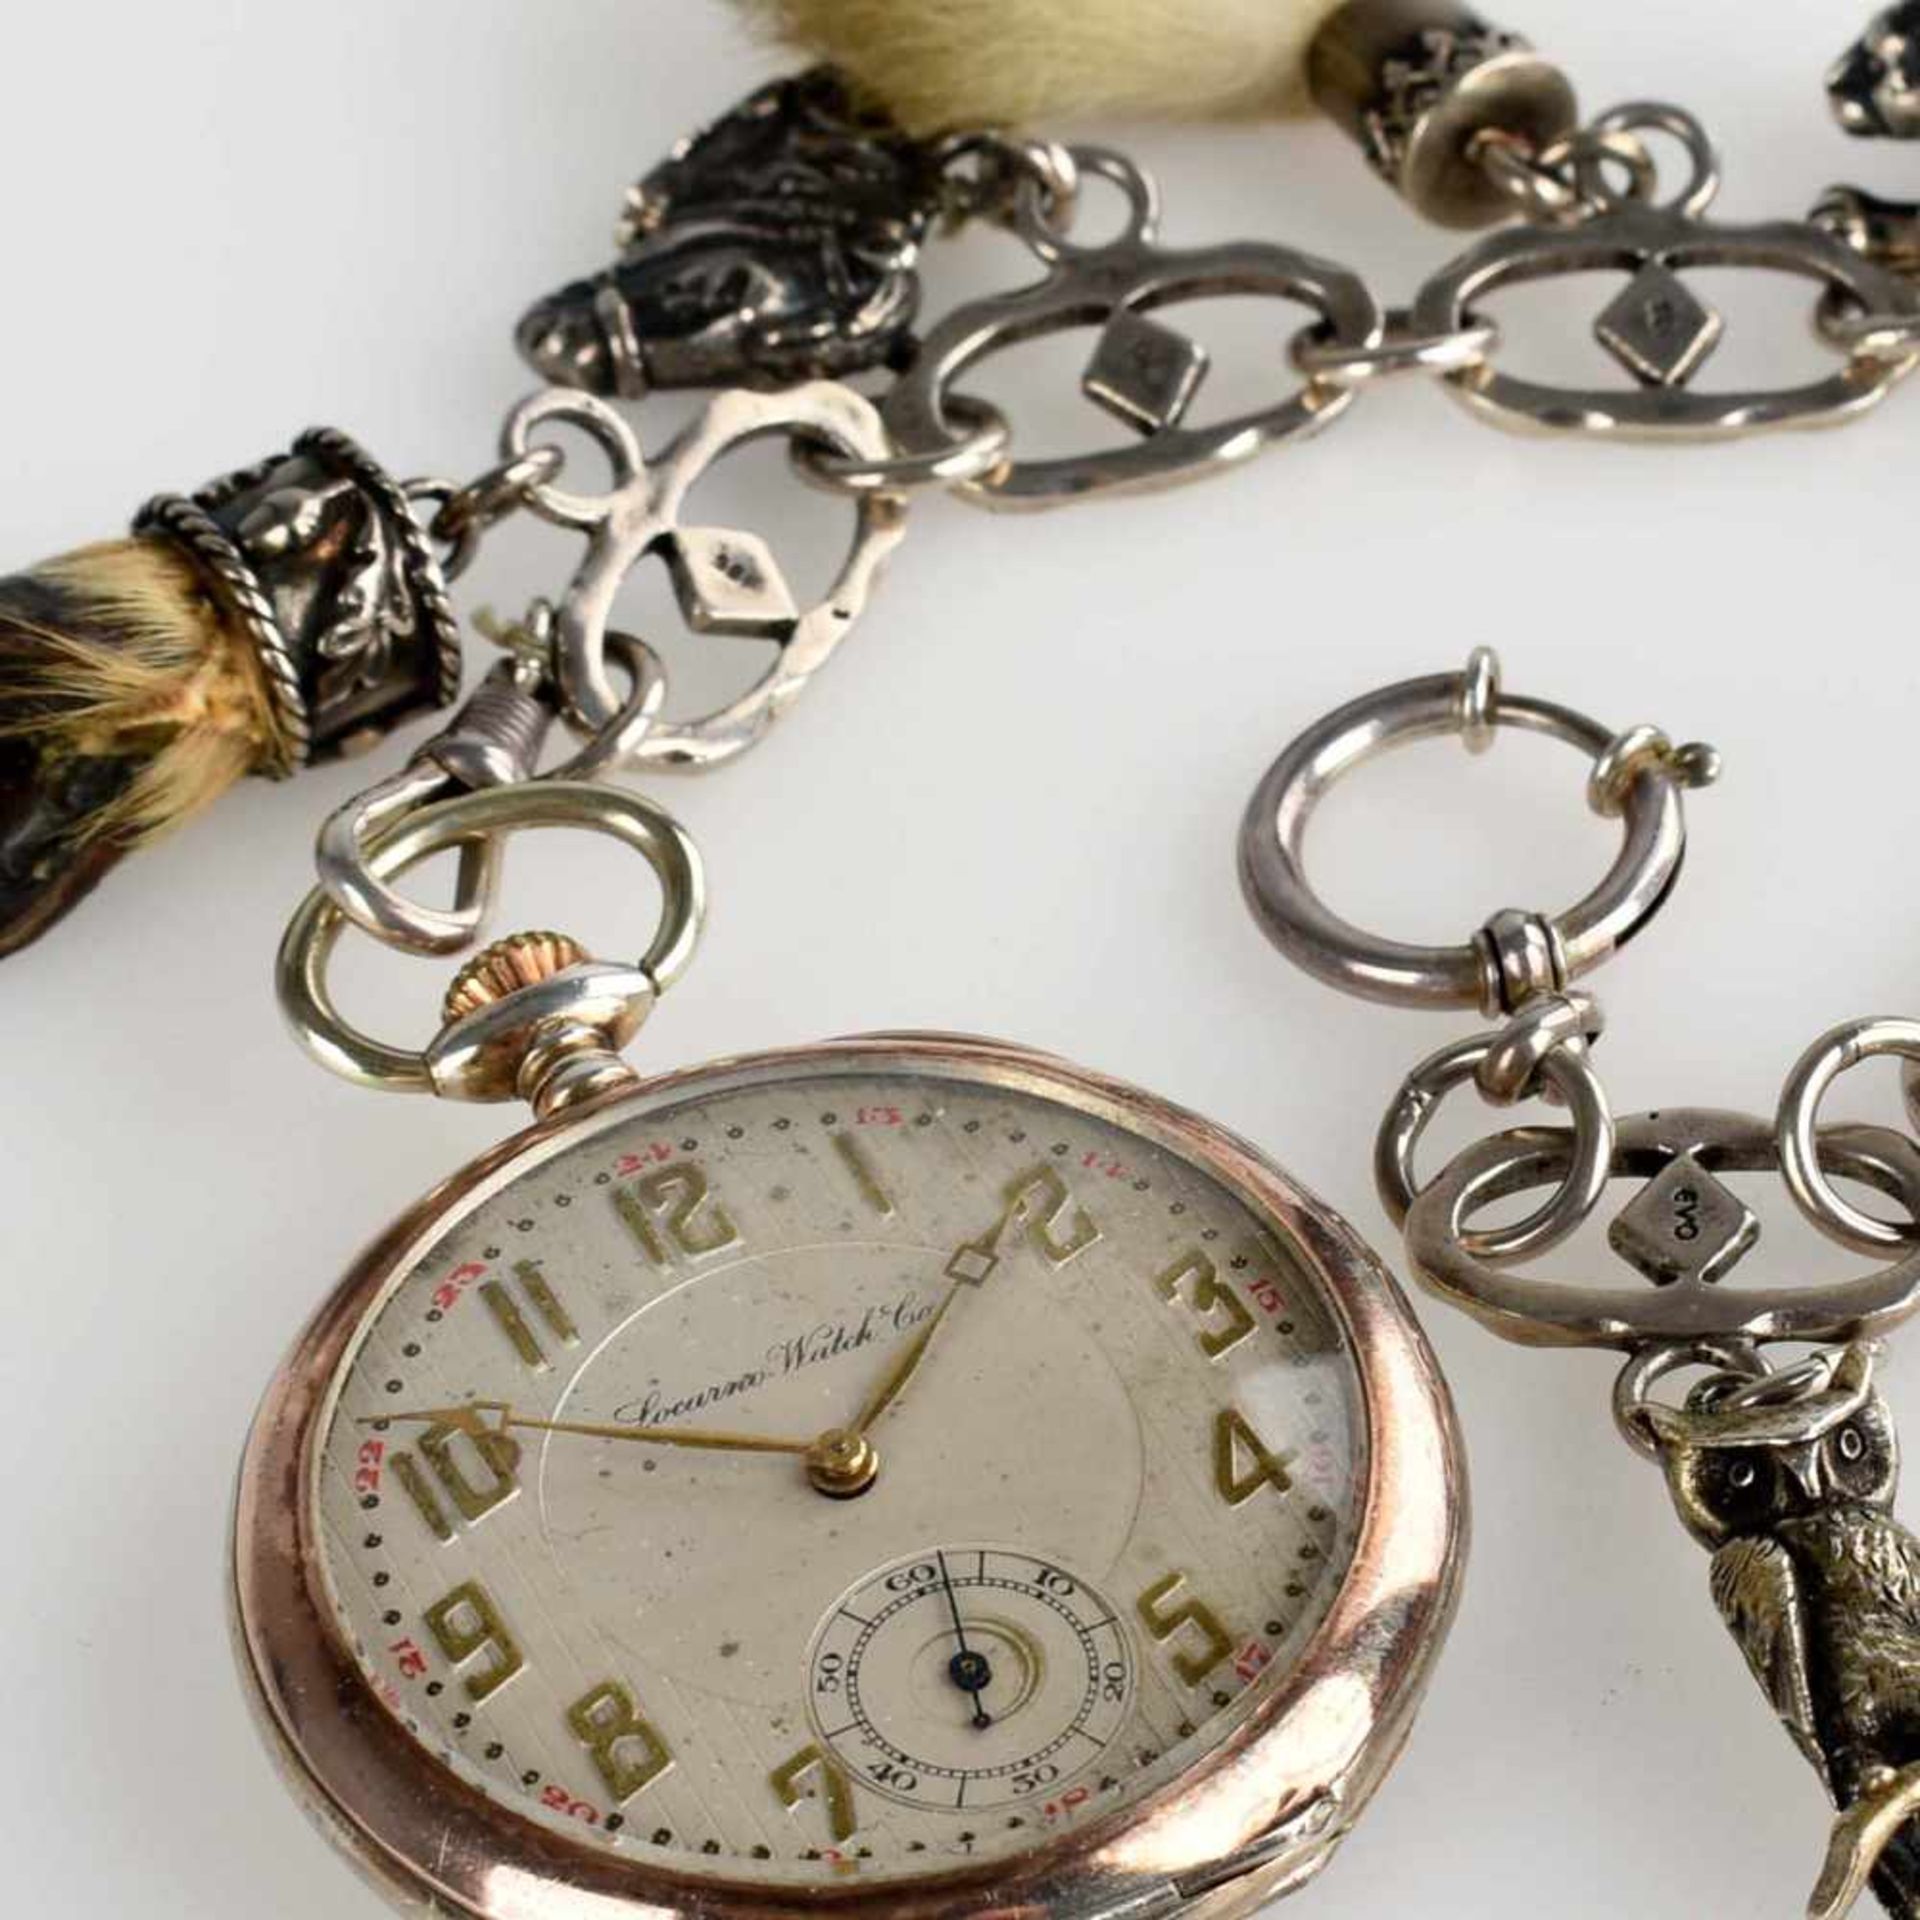 Taschenuhr mit Uhrenkette Silber 800, helles Zifferblatt bez. "Locarno Watch Co.", Stunde, Minute